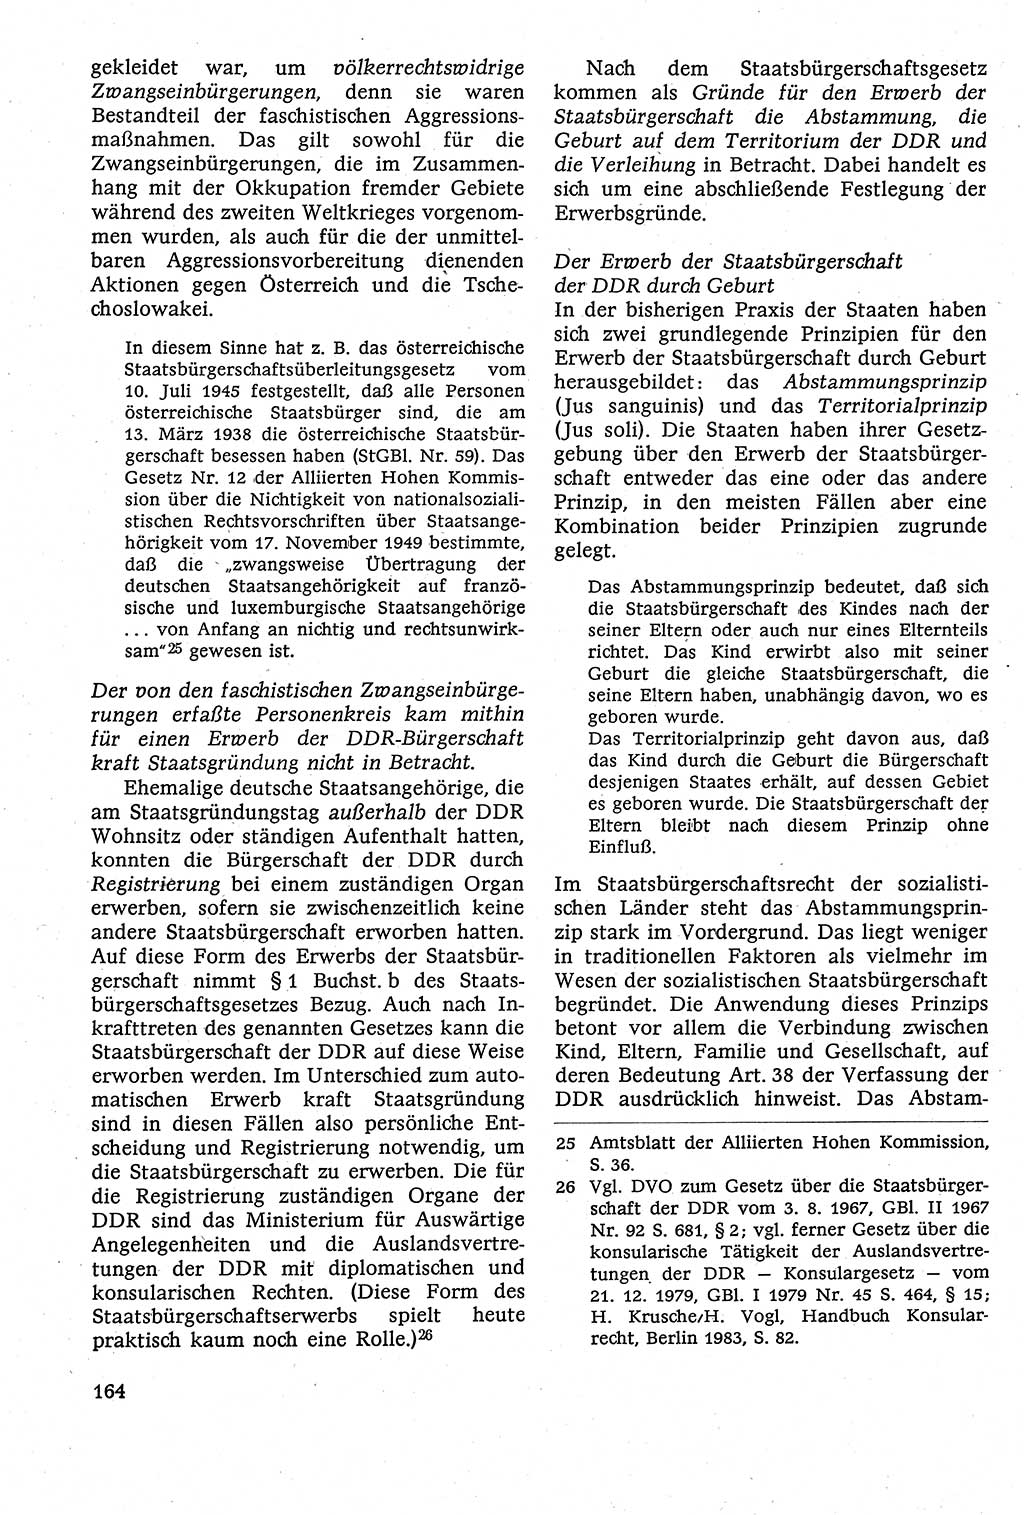 Staatsrecht der DDR [Deutsche Demokratische Republik (DDR)], Lehrbuch 1984, Seite 164 (St.-R. DDR Lb. 1984, S. 164)